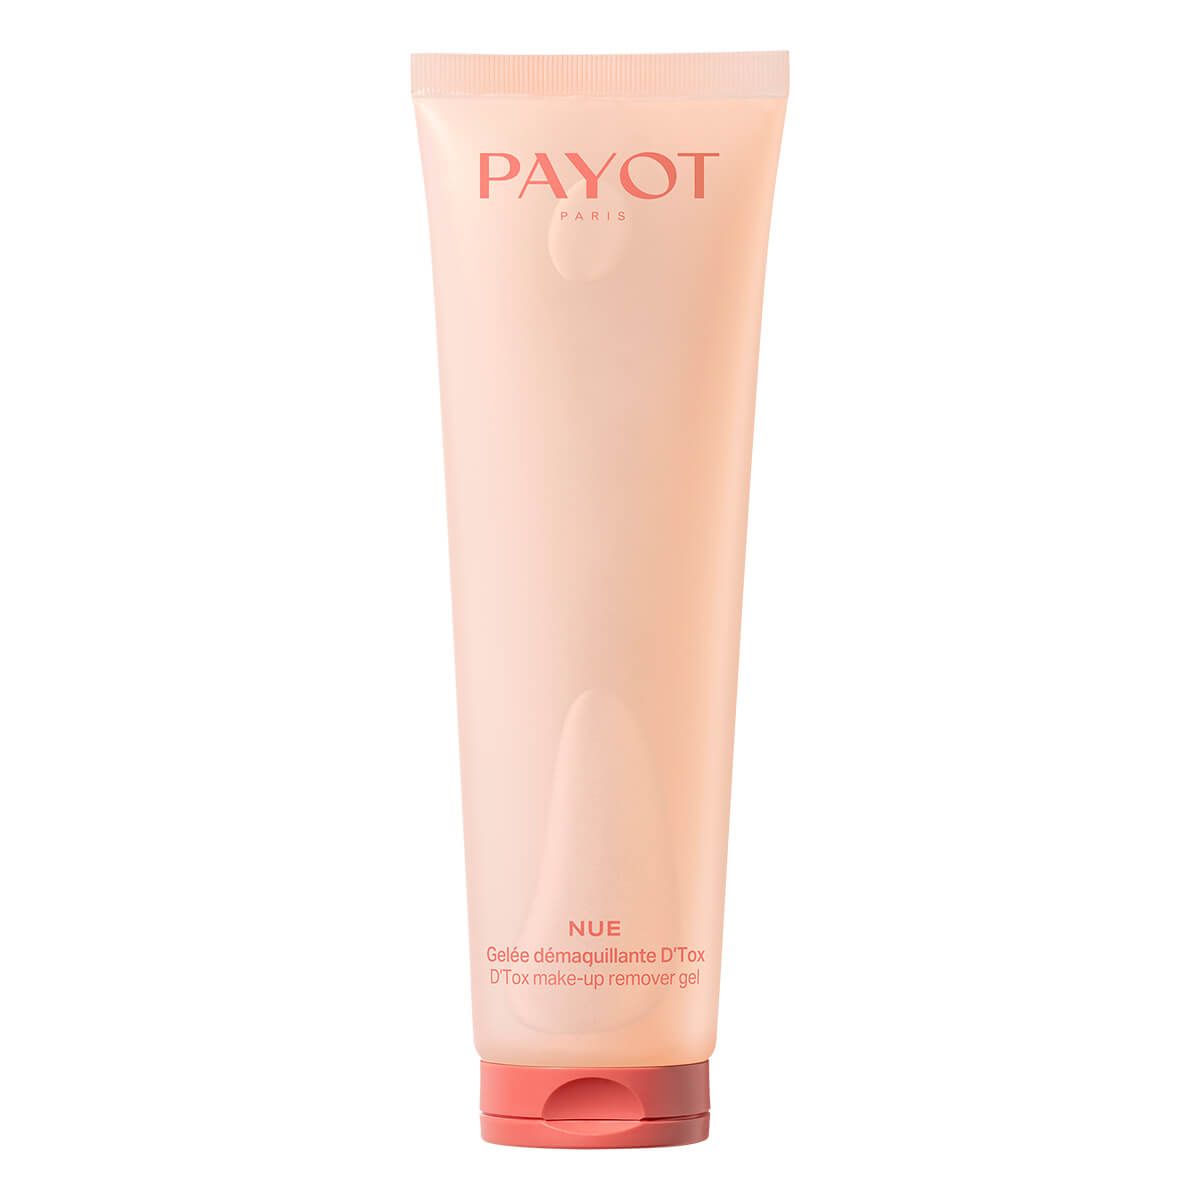 Payot - Nue D'Tox Make-Up Remover Gel 150 ml - Skjønnhet